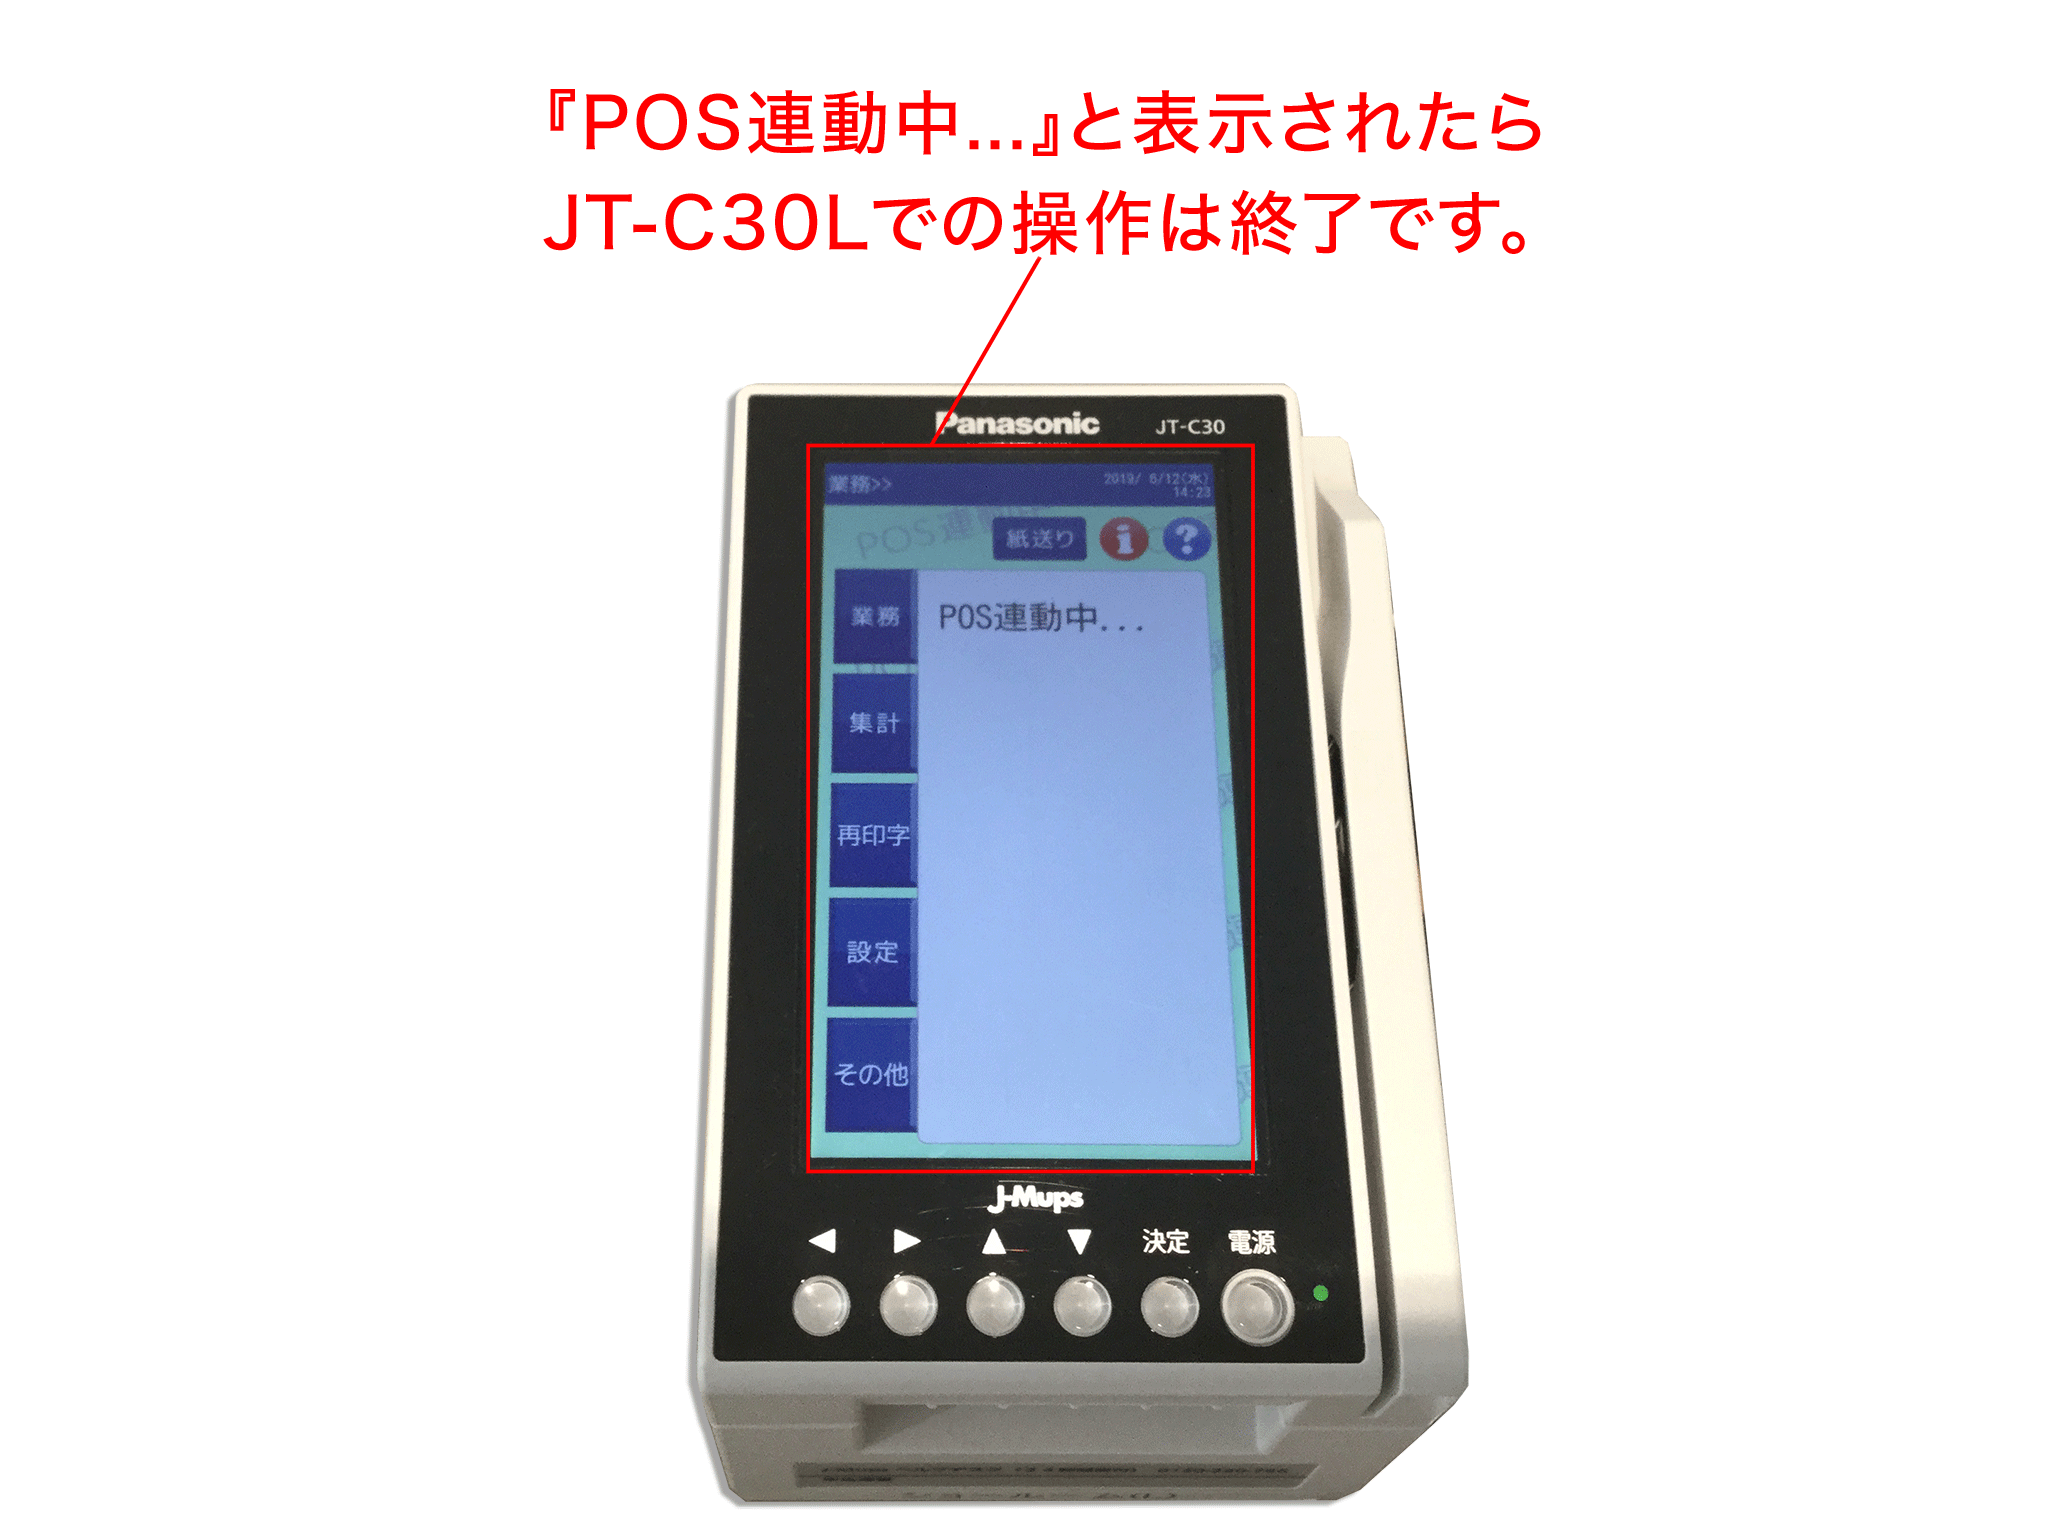 パナソニック カード決済端末 JT-C30 Panasonic - 店舗用品